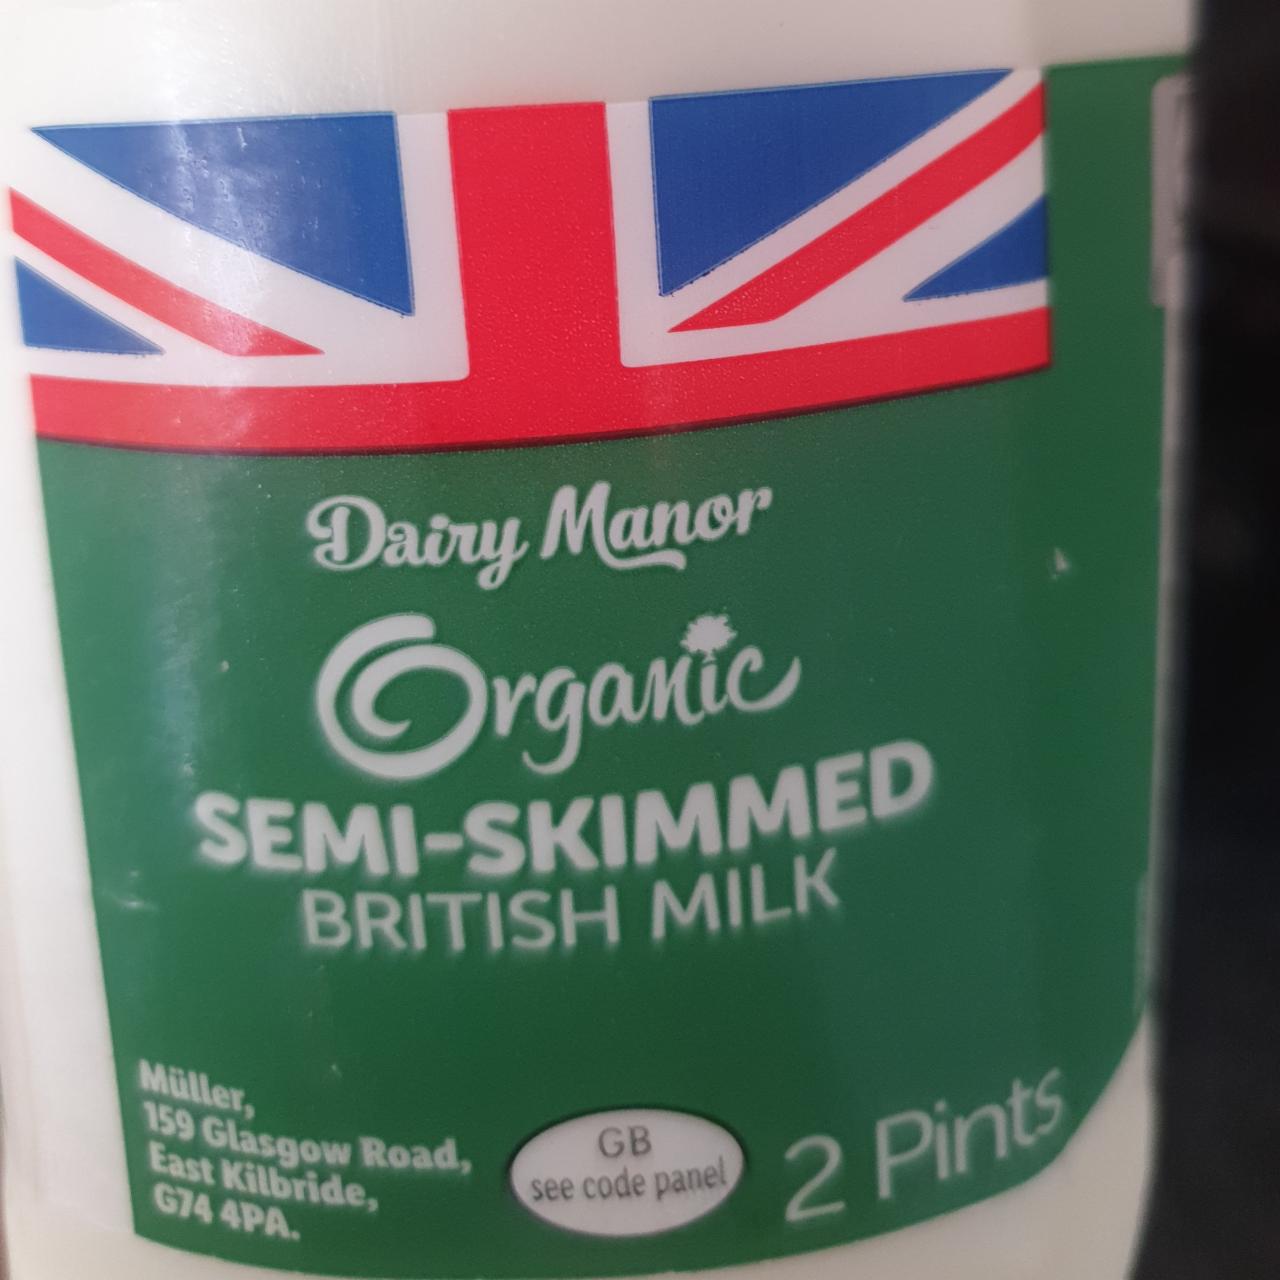 Fotografie - Organic Semi-Skimmed British Milk Dairy Manor